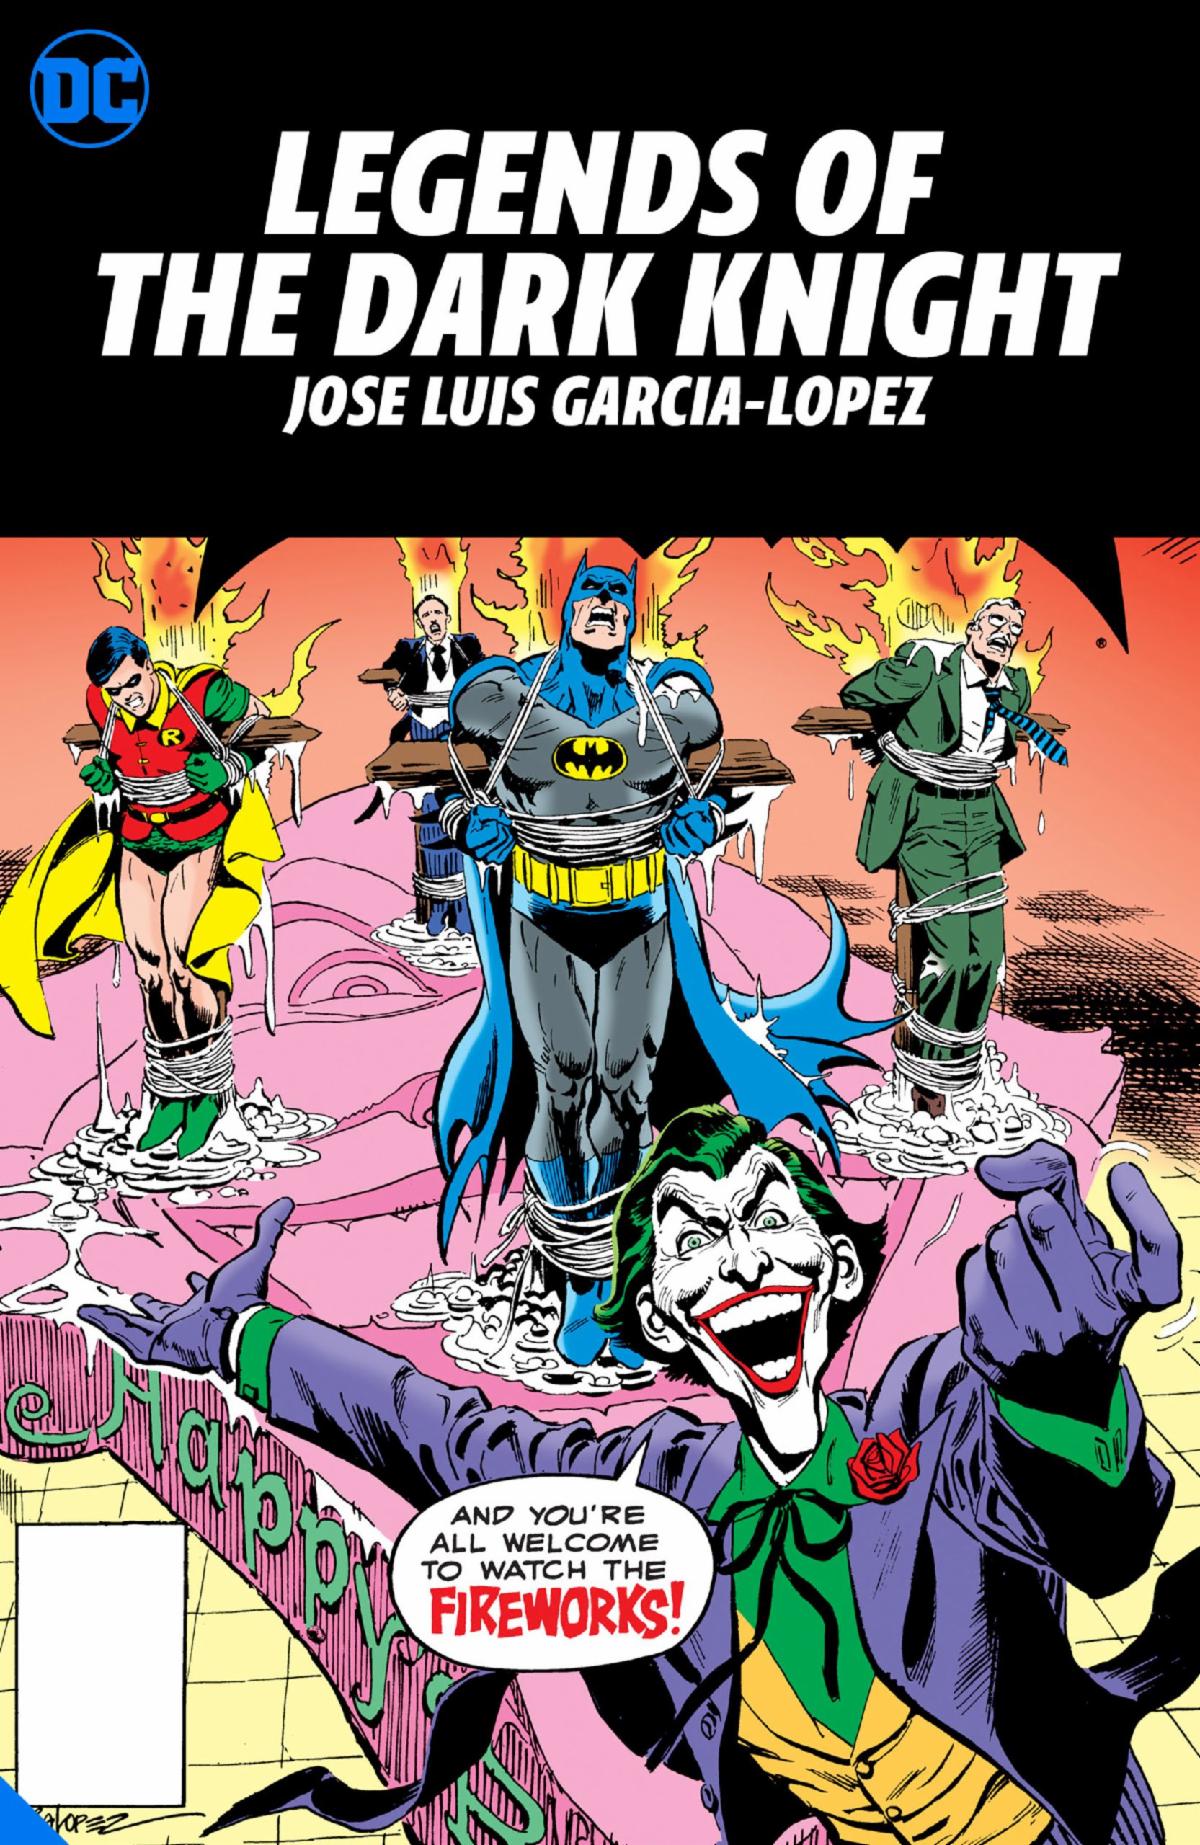 Legends of the Dark Knight by Jose Luis Garcia-Lopez